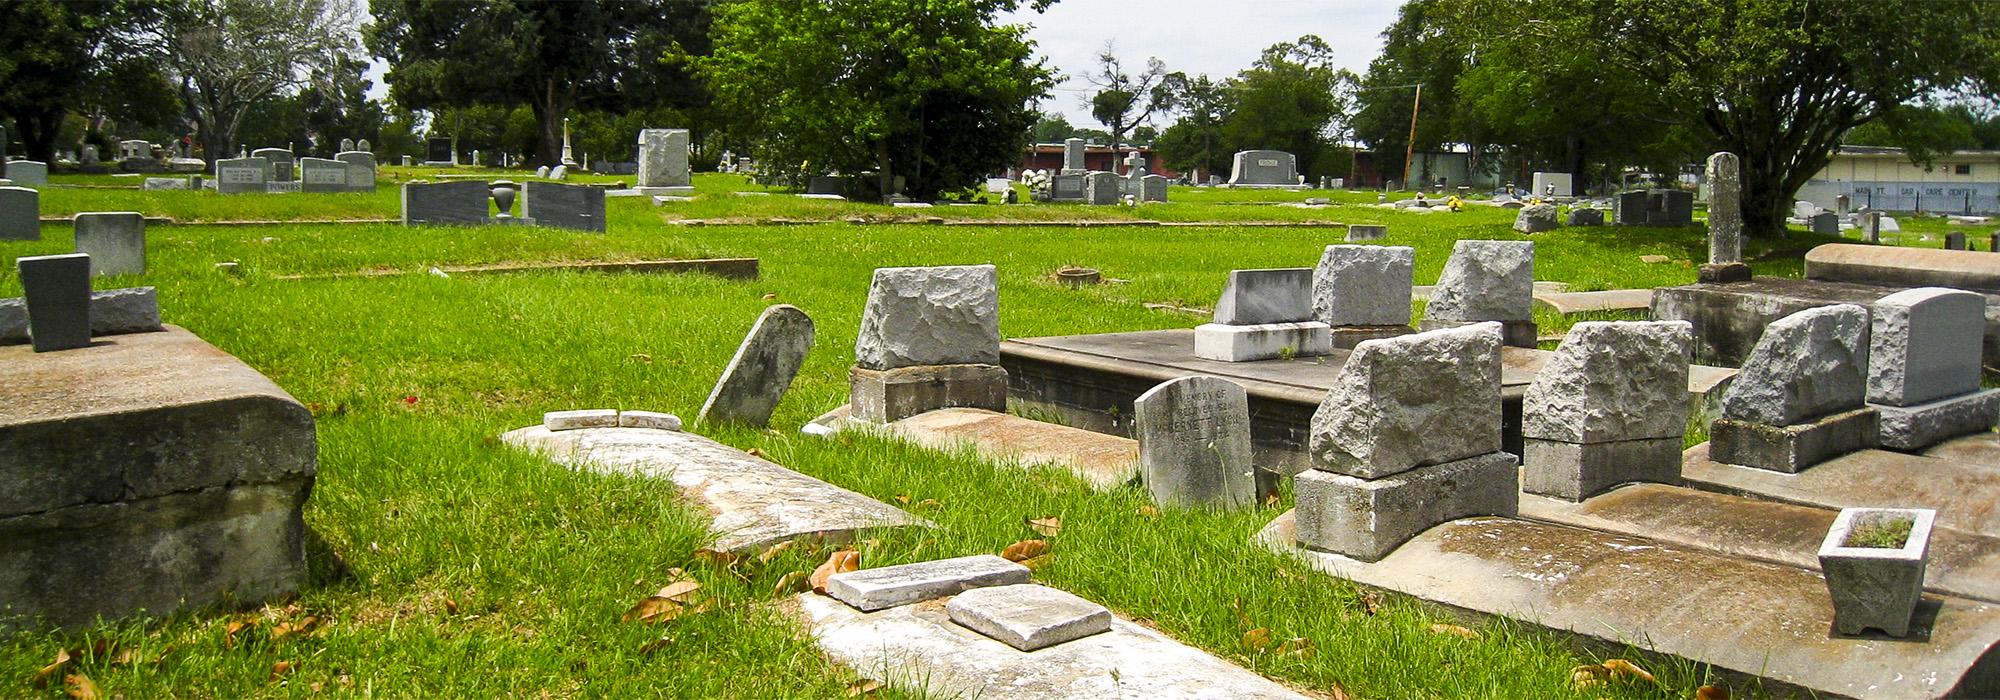 Magnolia Cemetery, Baton Rouge, LA